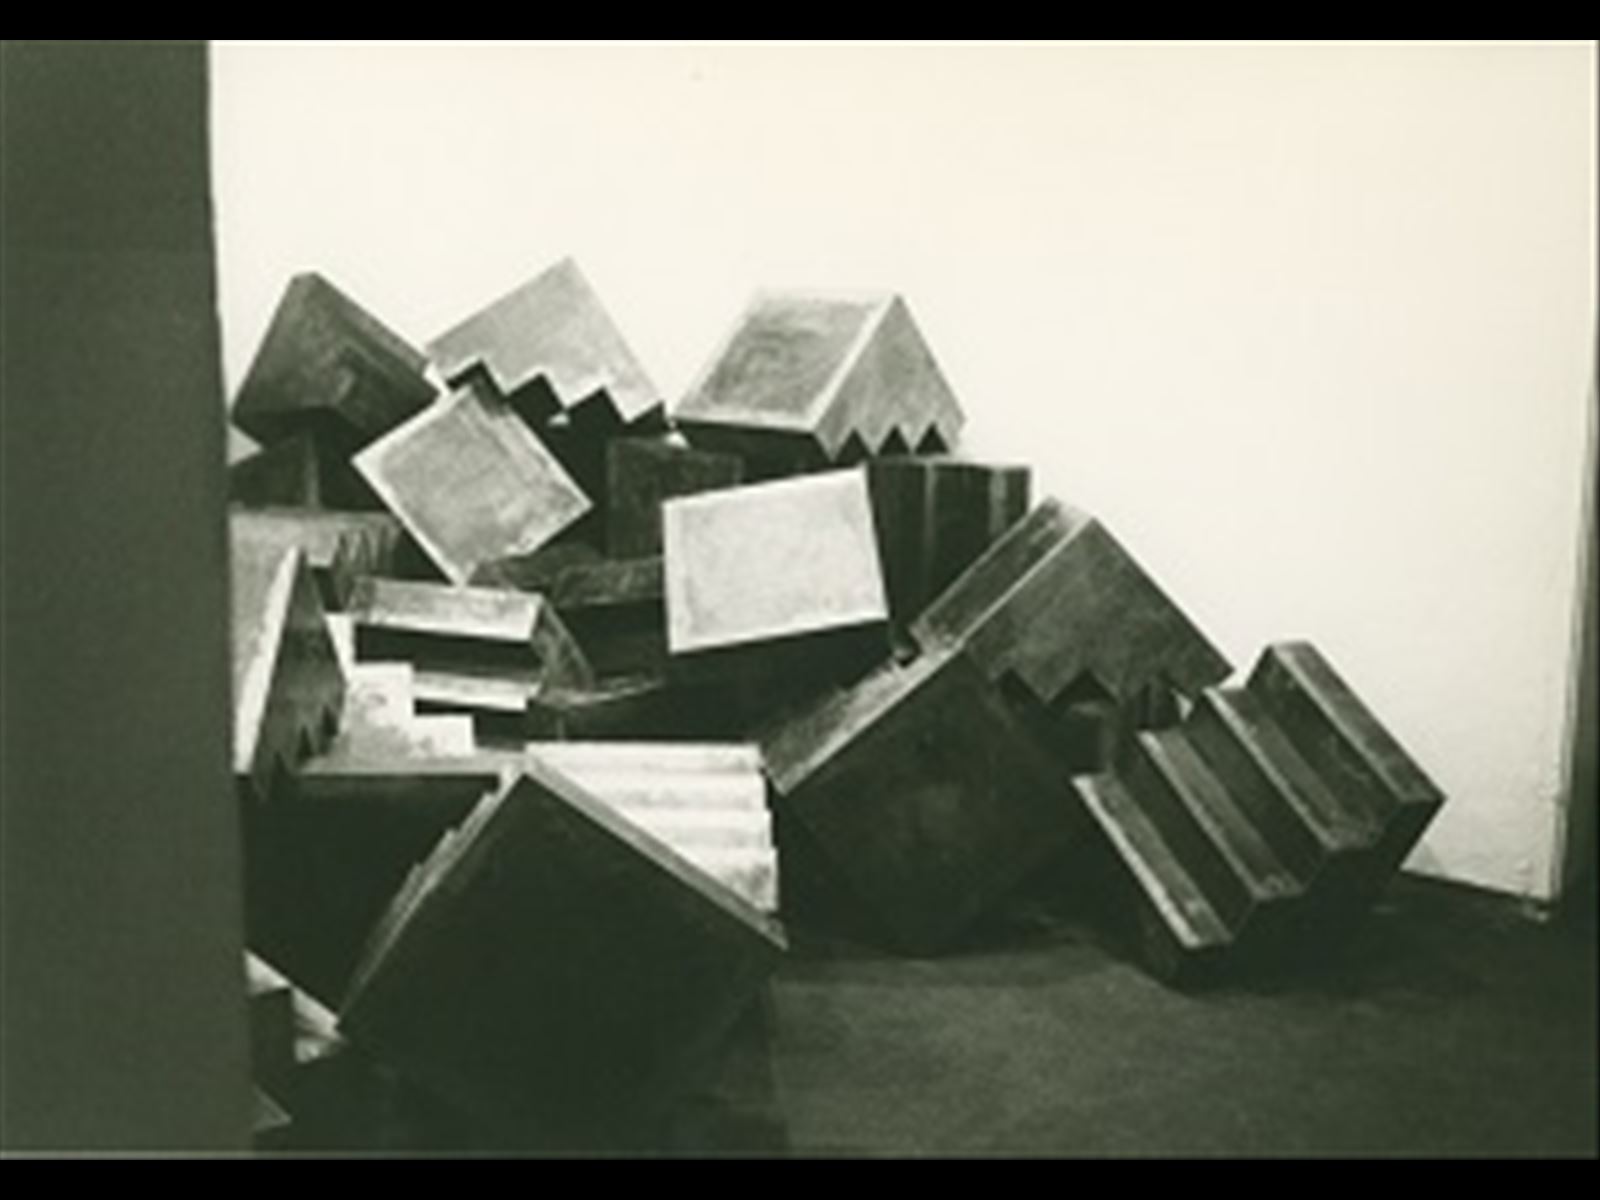 Opening. Costruzione cumulo-parete 60 moduli. Nicola Carrino, Primo Piano. Roma, 1975. Archivio Nicola Carrino.